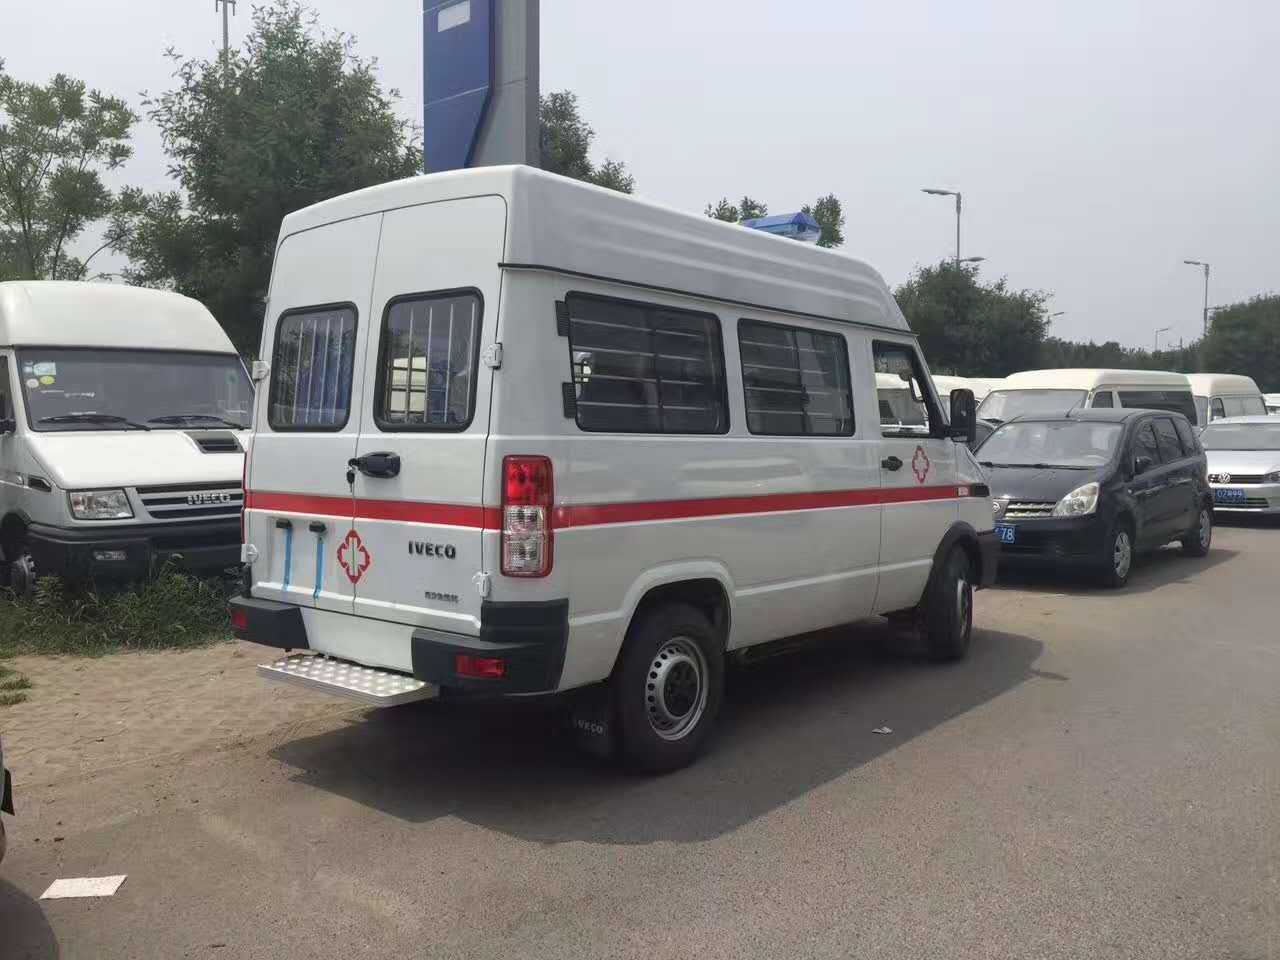 Good Sale Hospital Medical Transport Ambulance 